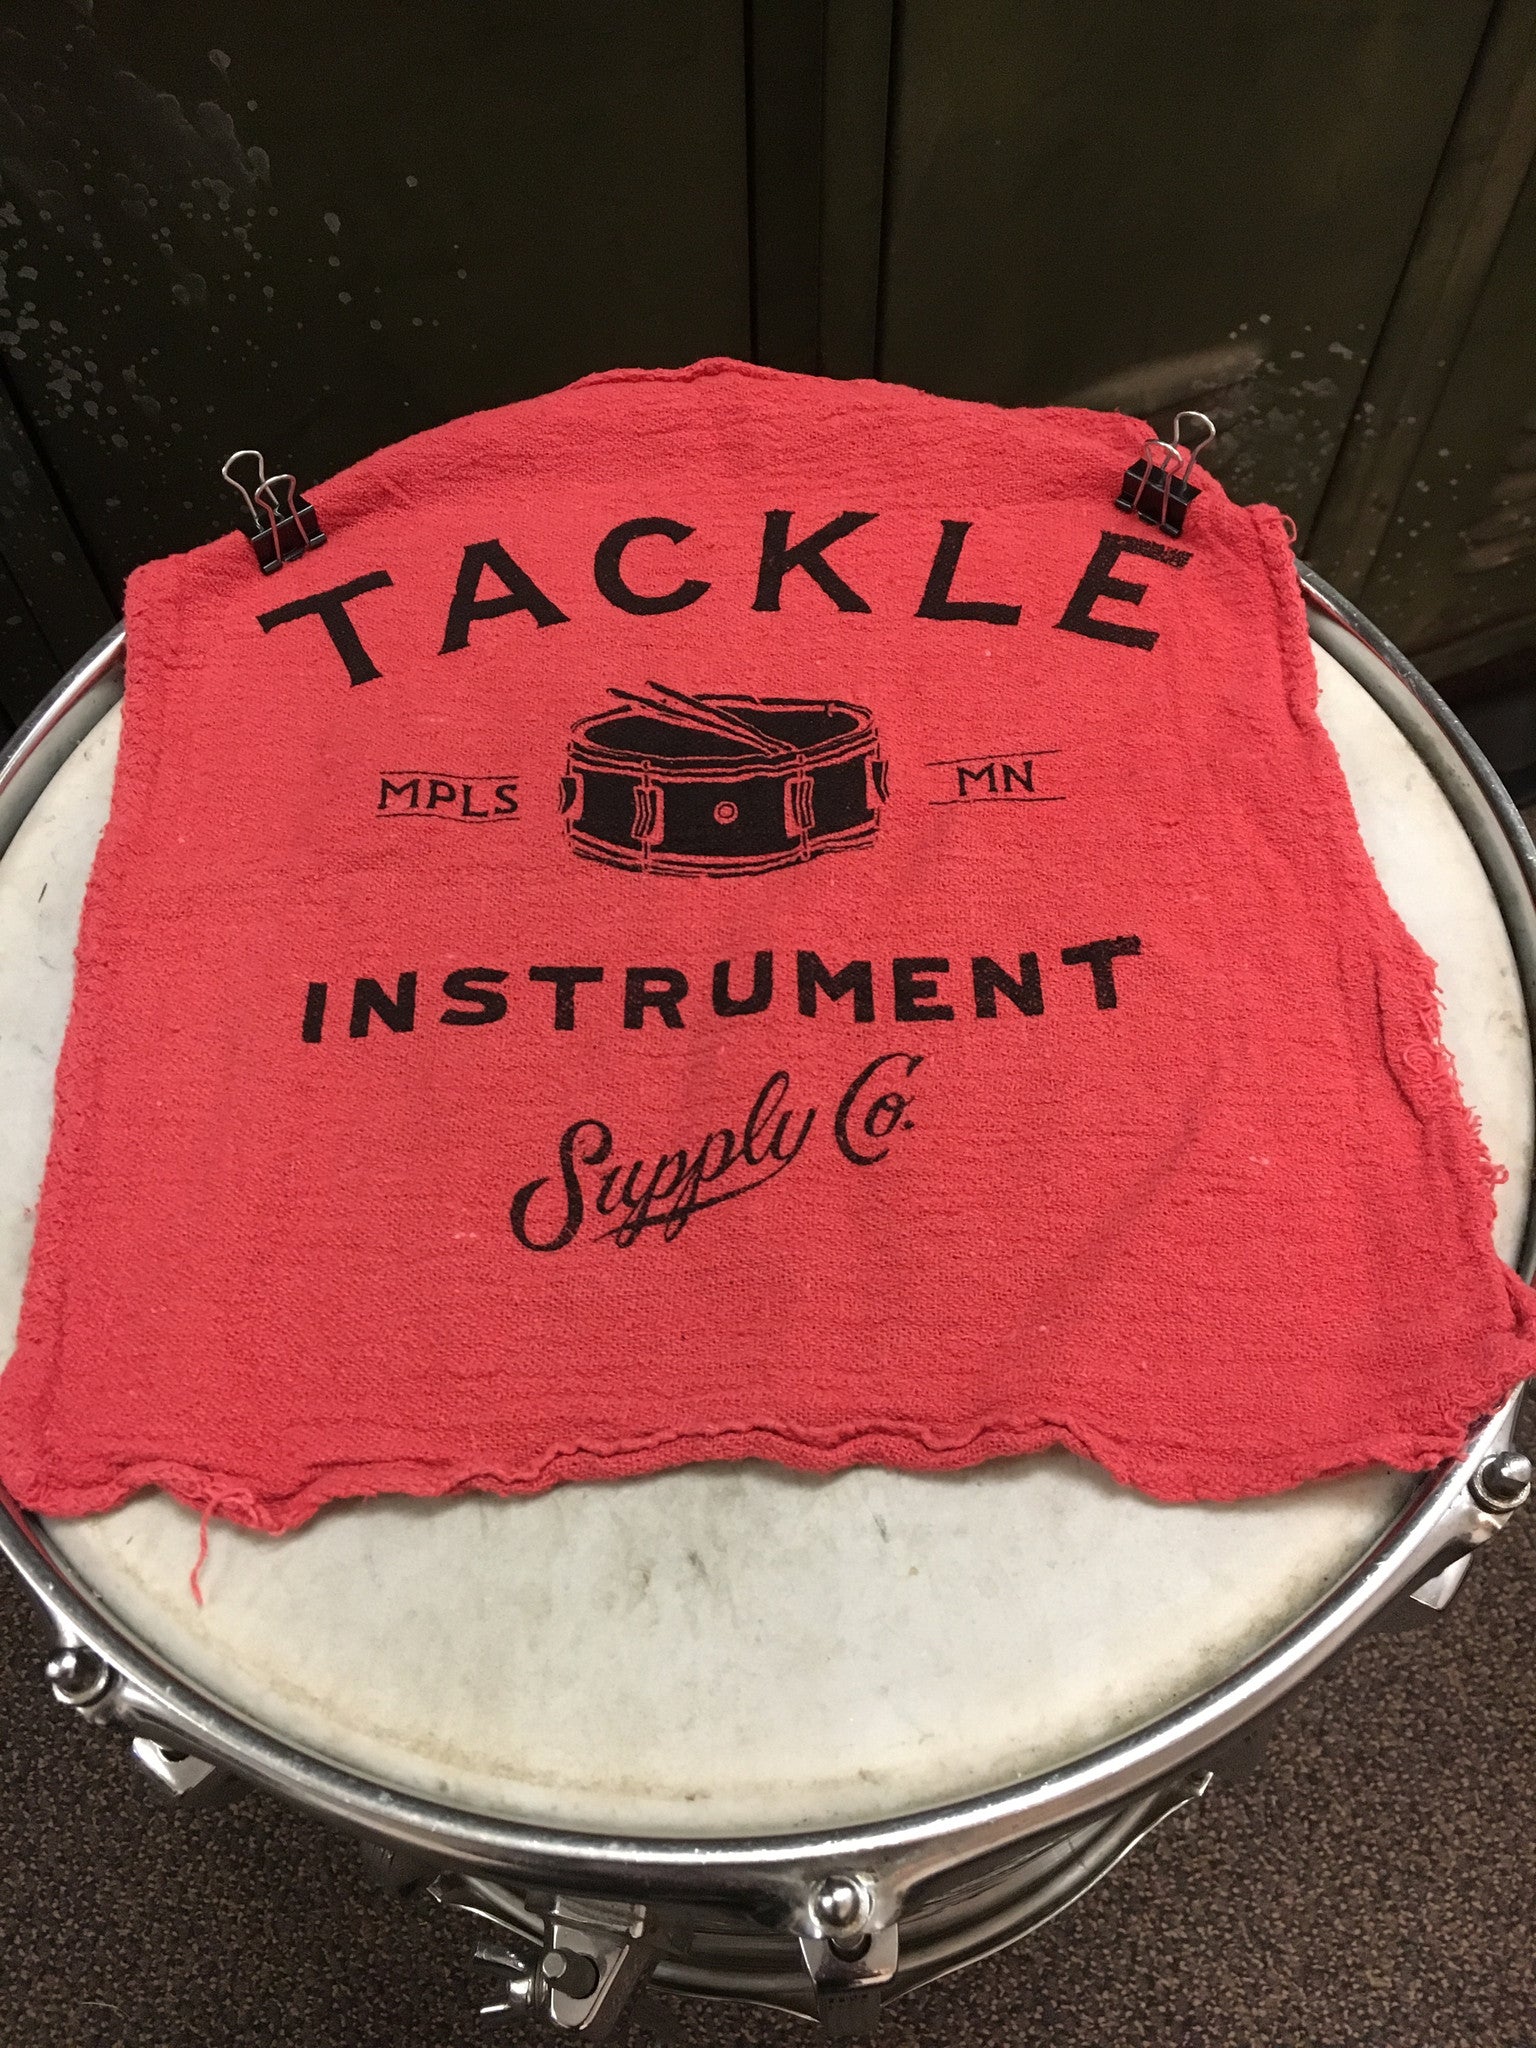 Tackle Instrument Supply Co. Rack Tom Bumper Guard Black – Badges Drum Shop